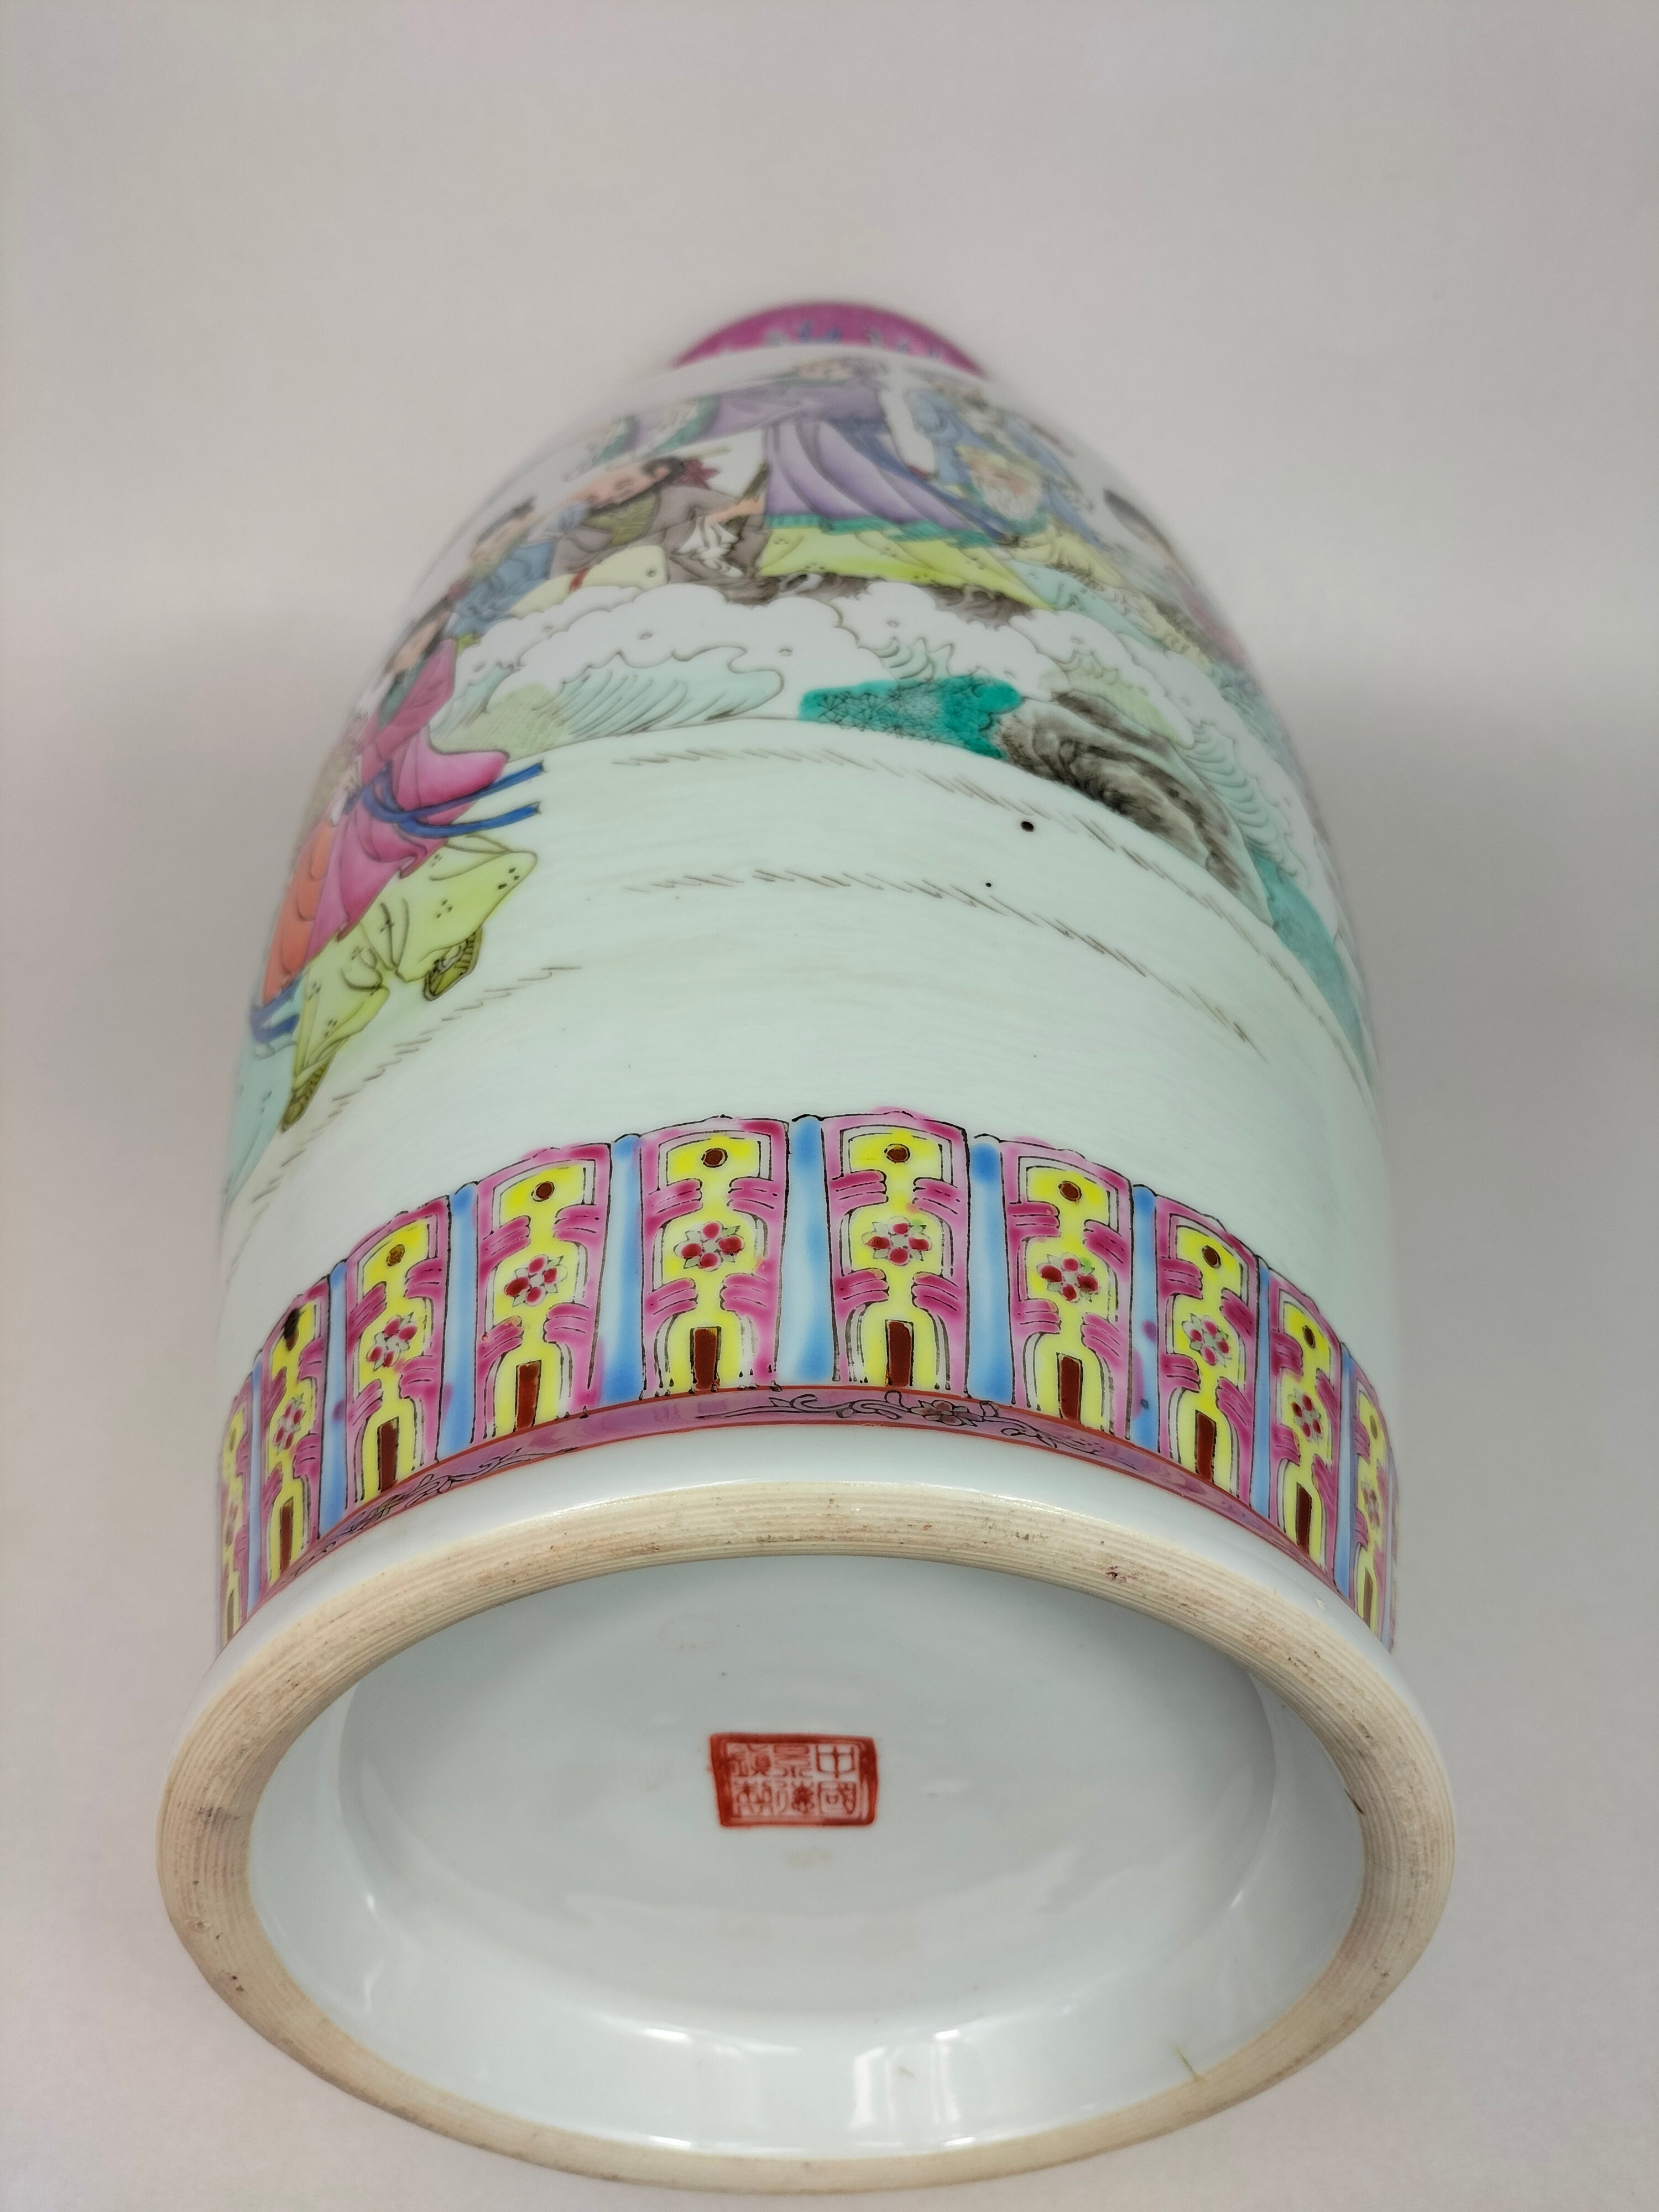 装饰八仙的大型中国粉彩花瓶// 景德镇- 20 世纪– Diddenantiques